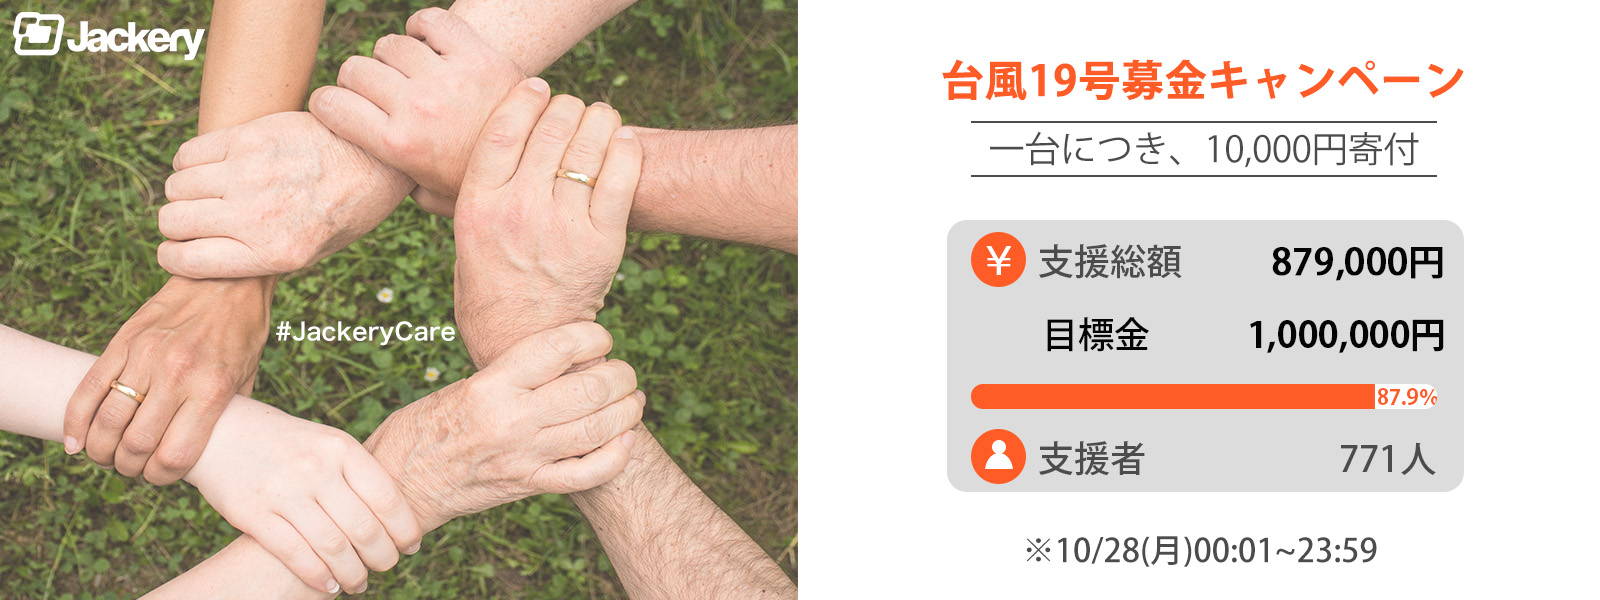 台風19号募金キャンペーンの現在の支援総額のご報告